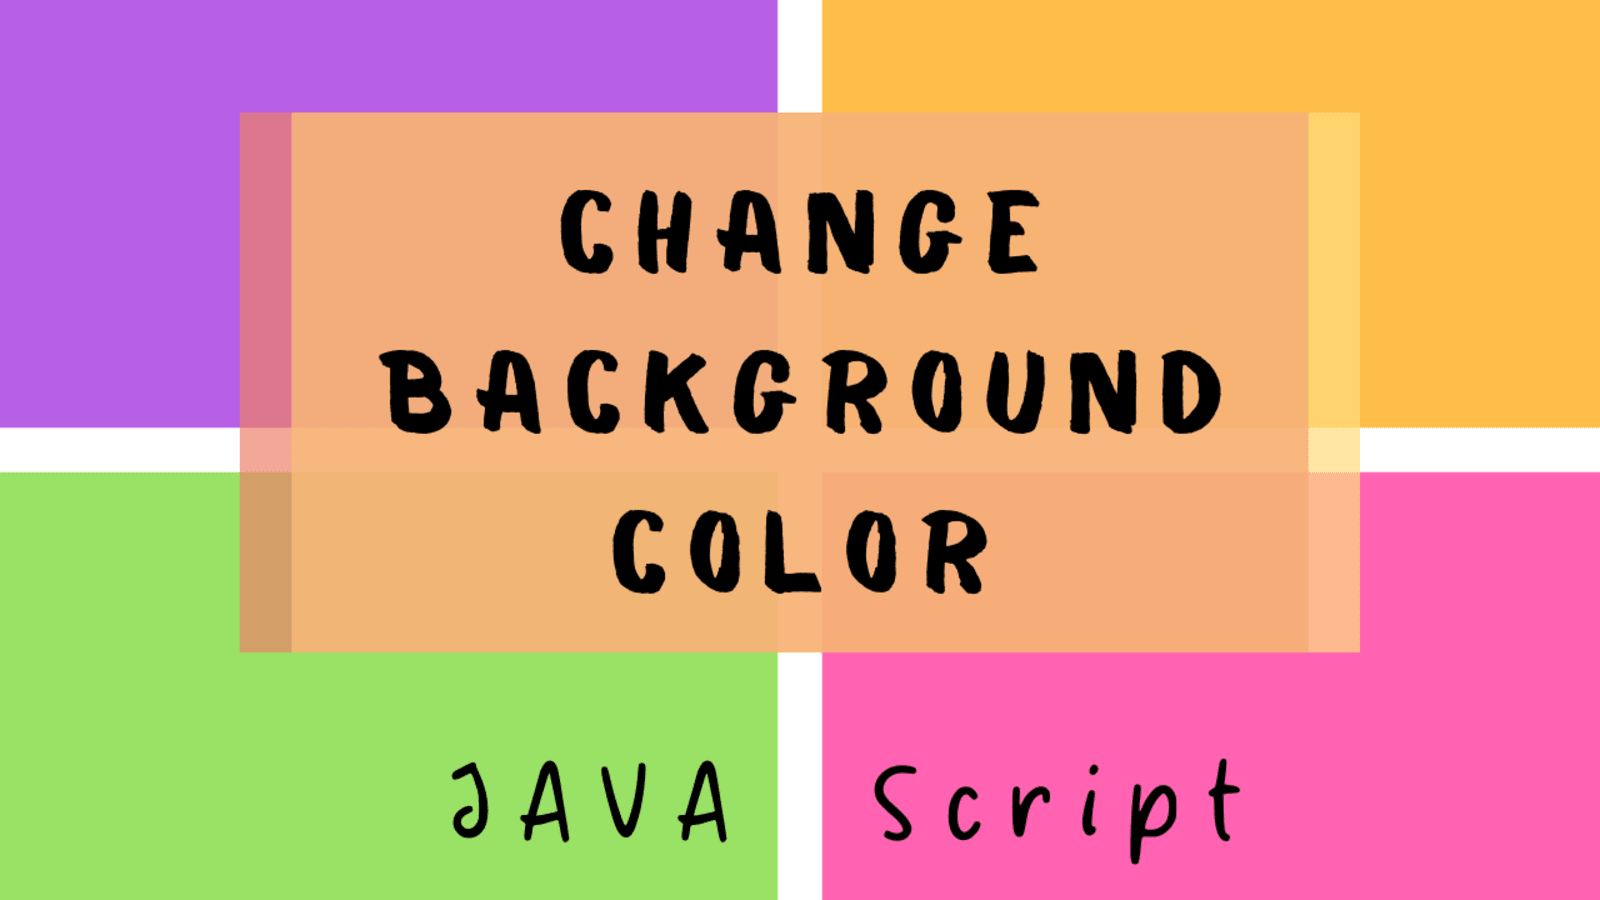 Hãy xem ngay hình ảnh chúng tôi tạo bằng cách sử dụng JavaScript, HTML, CSS để thay đổi màu nền và tạo nên hiệu ứng động đẹp mắt.